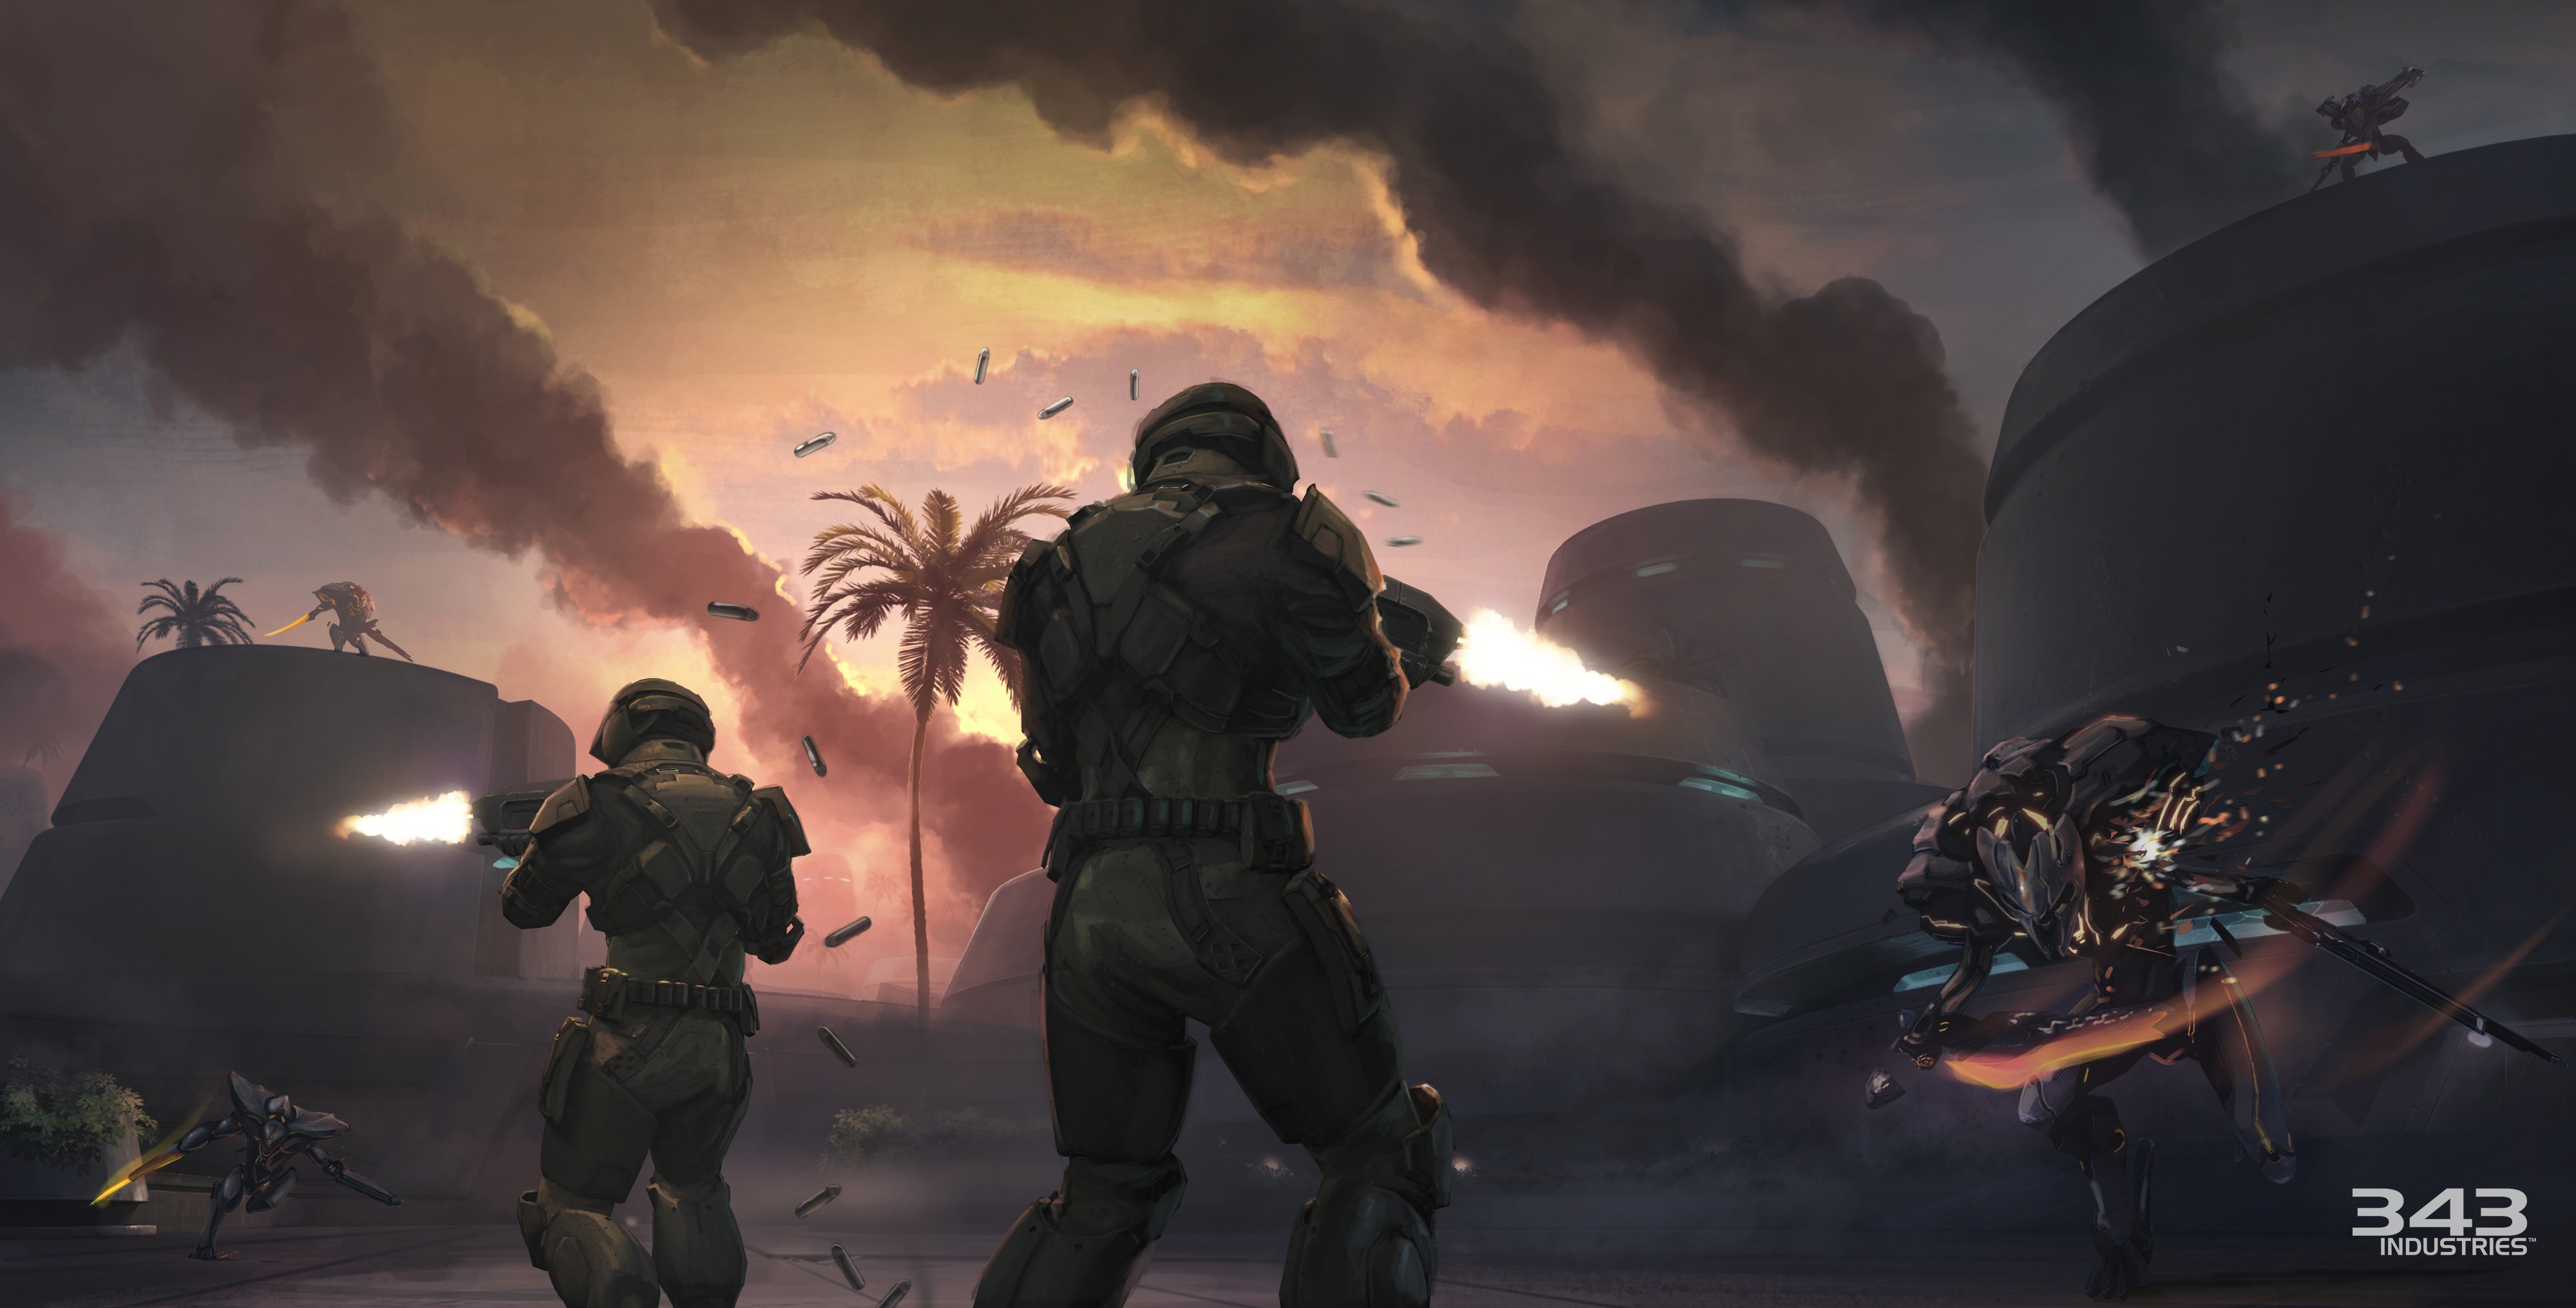 Meilleurs fonds d'écran Halo: Spartan Strike pour l'écran du téléphone